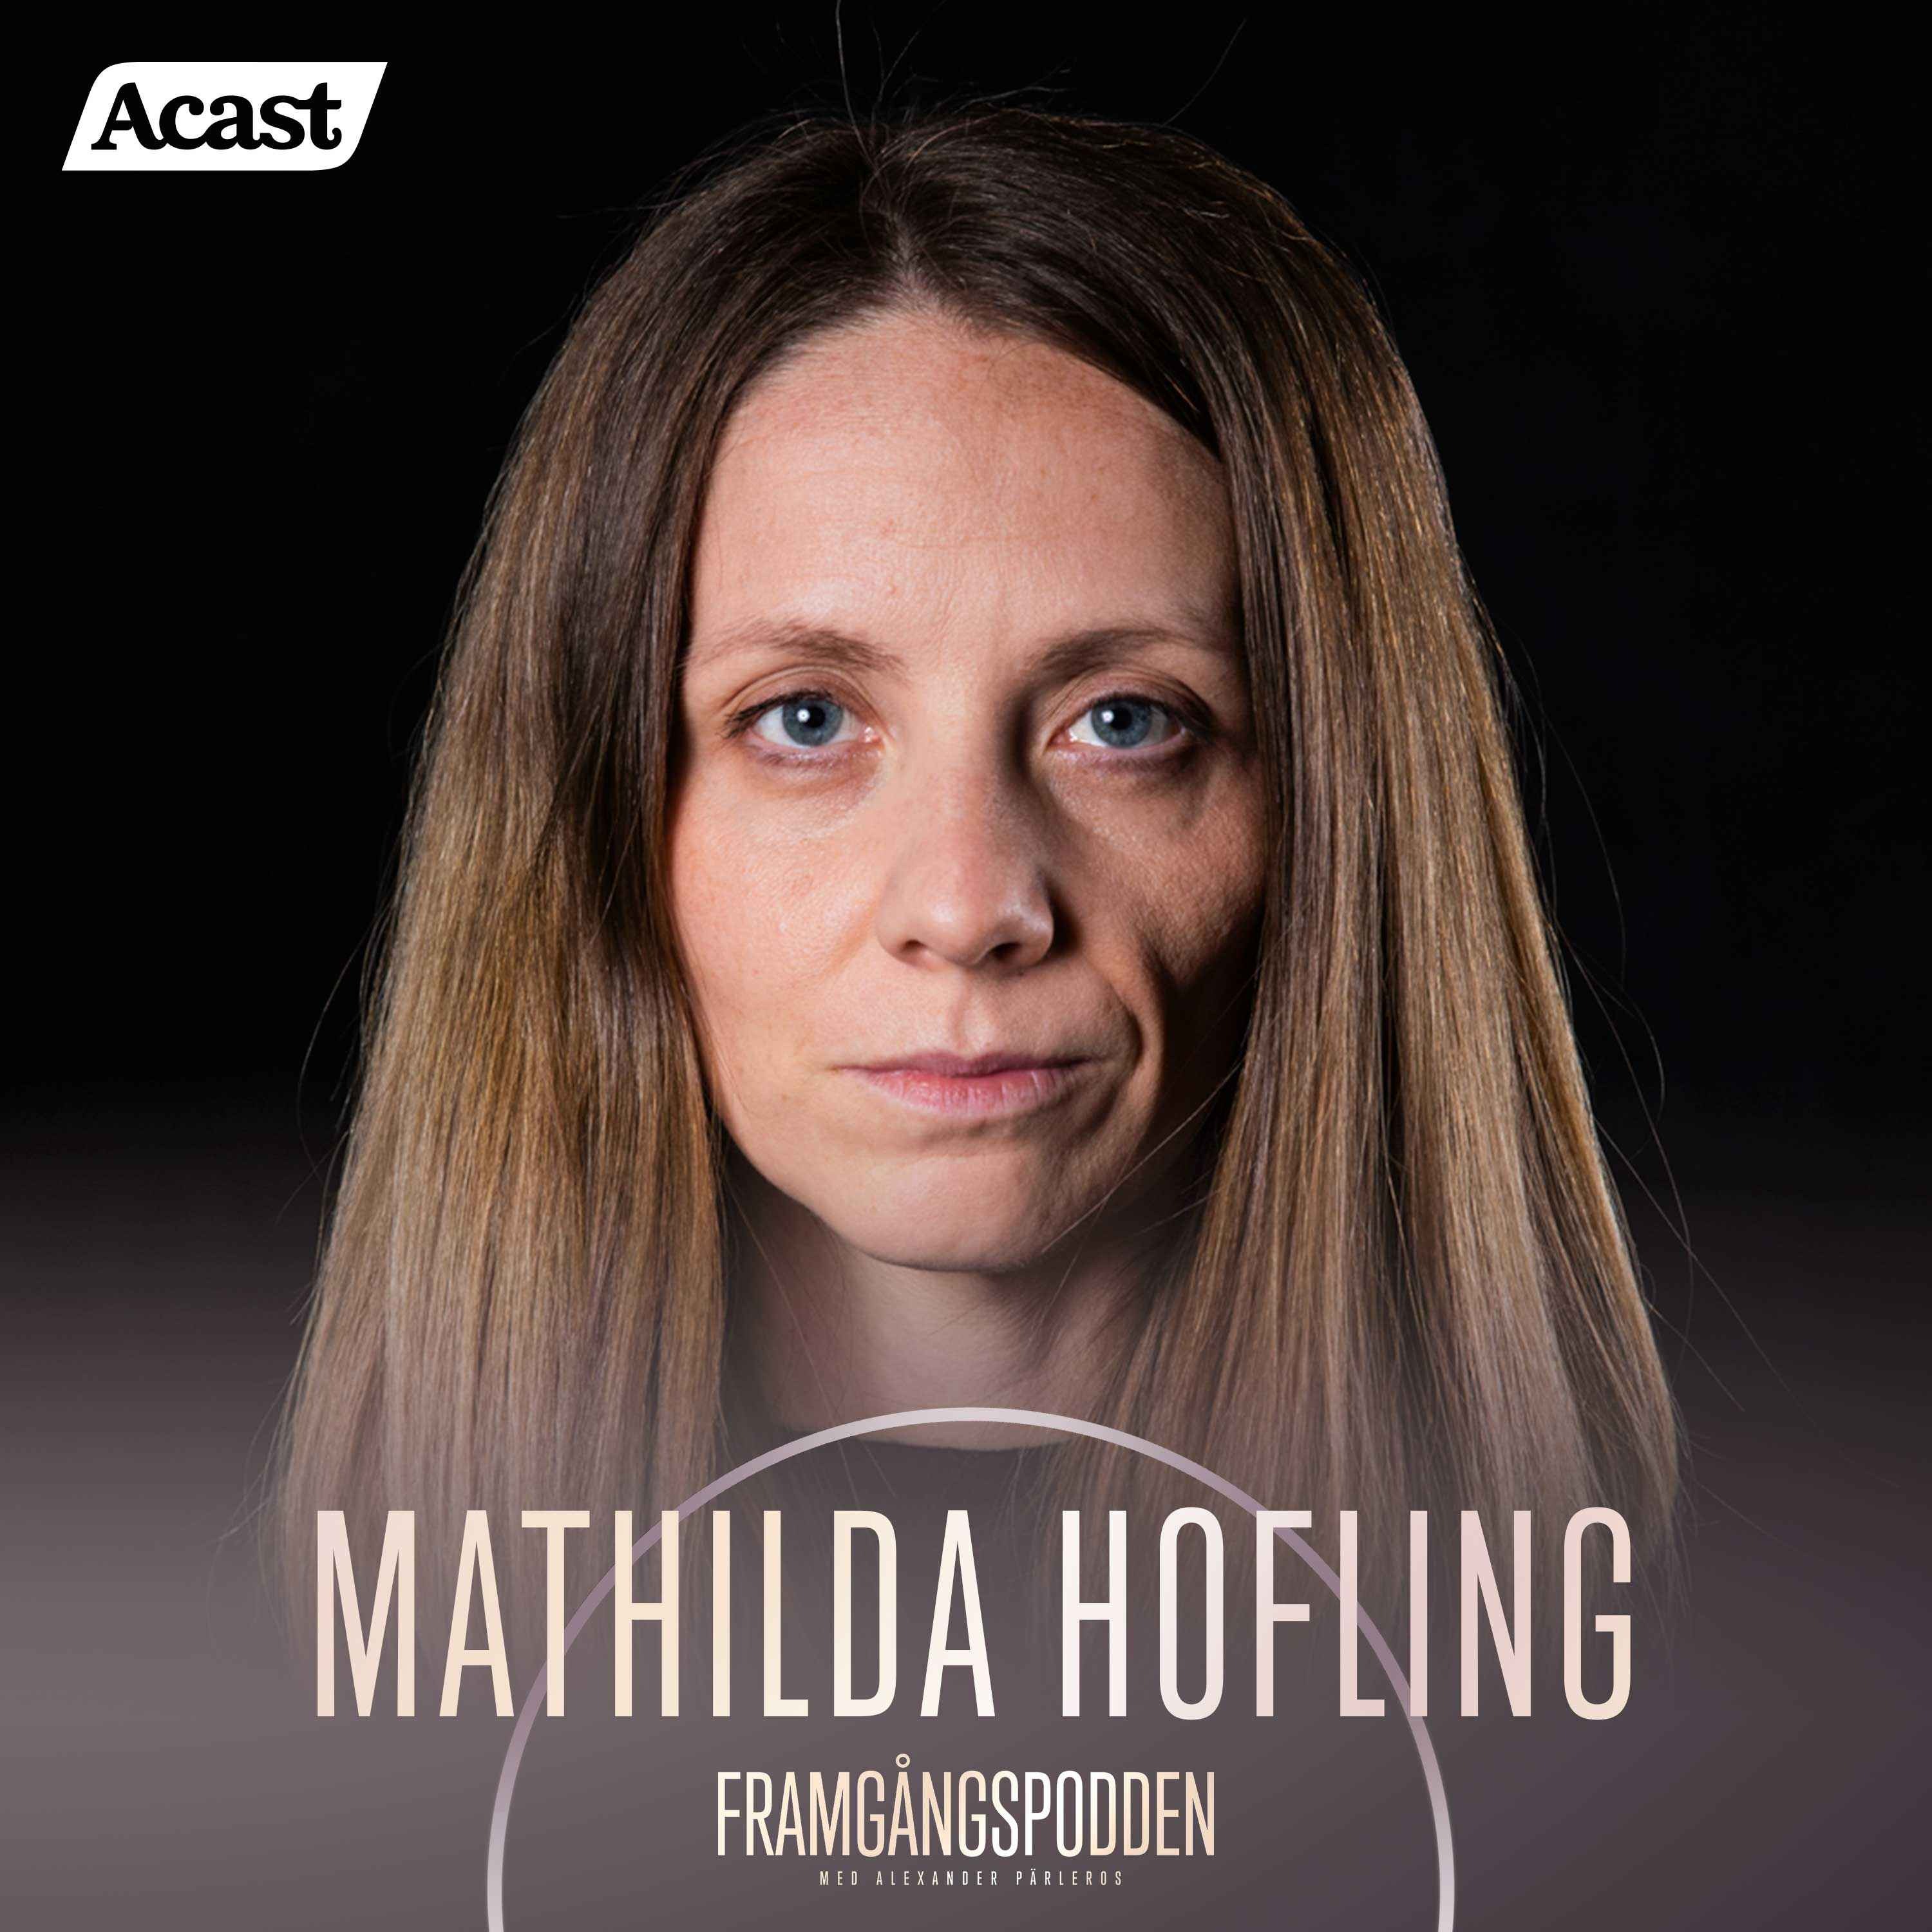 622. Mathilda Hofling - Utsatt för grooming, sexuella övergrepp & prostitution, Original